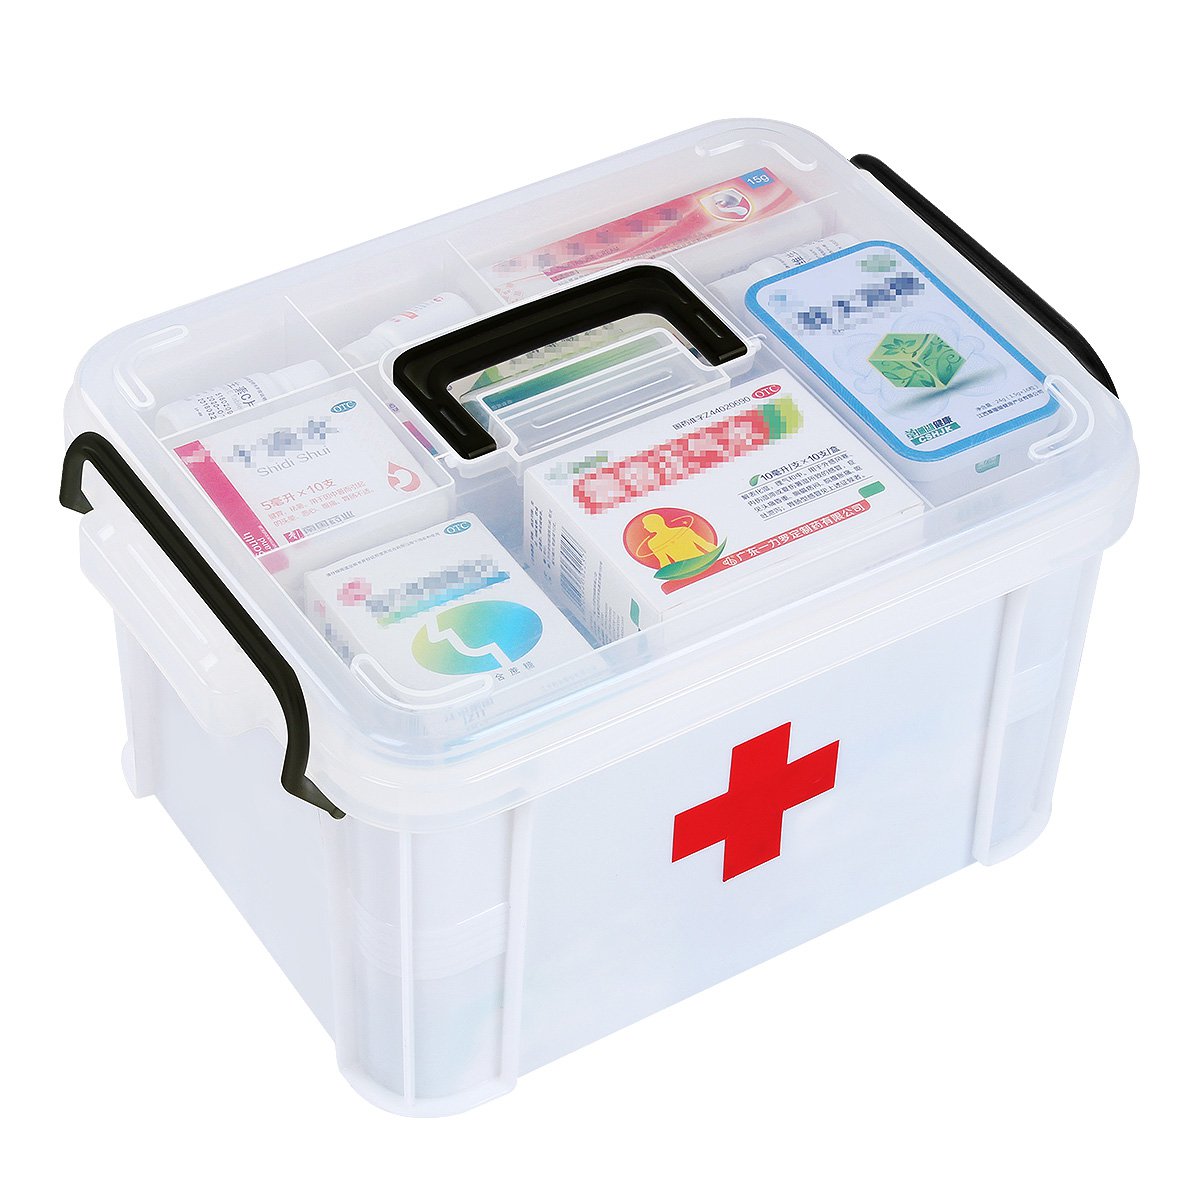 双层家用医药箱多层塑料药品收纳箱家庭医用箱急救箱